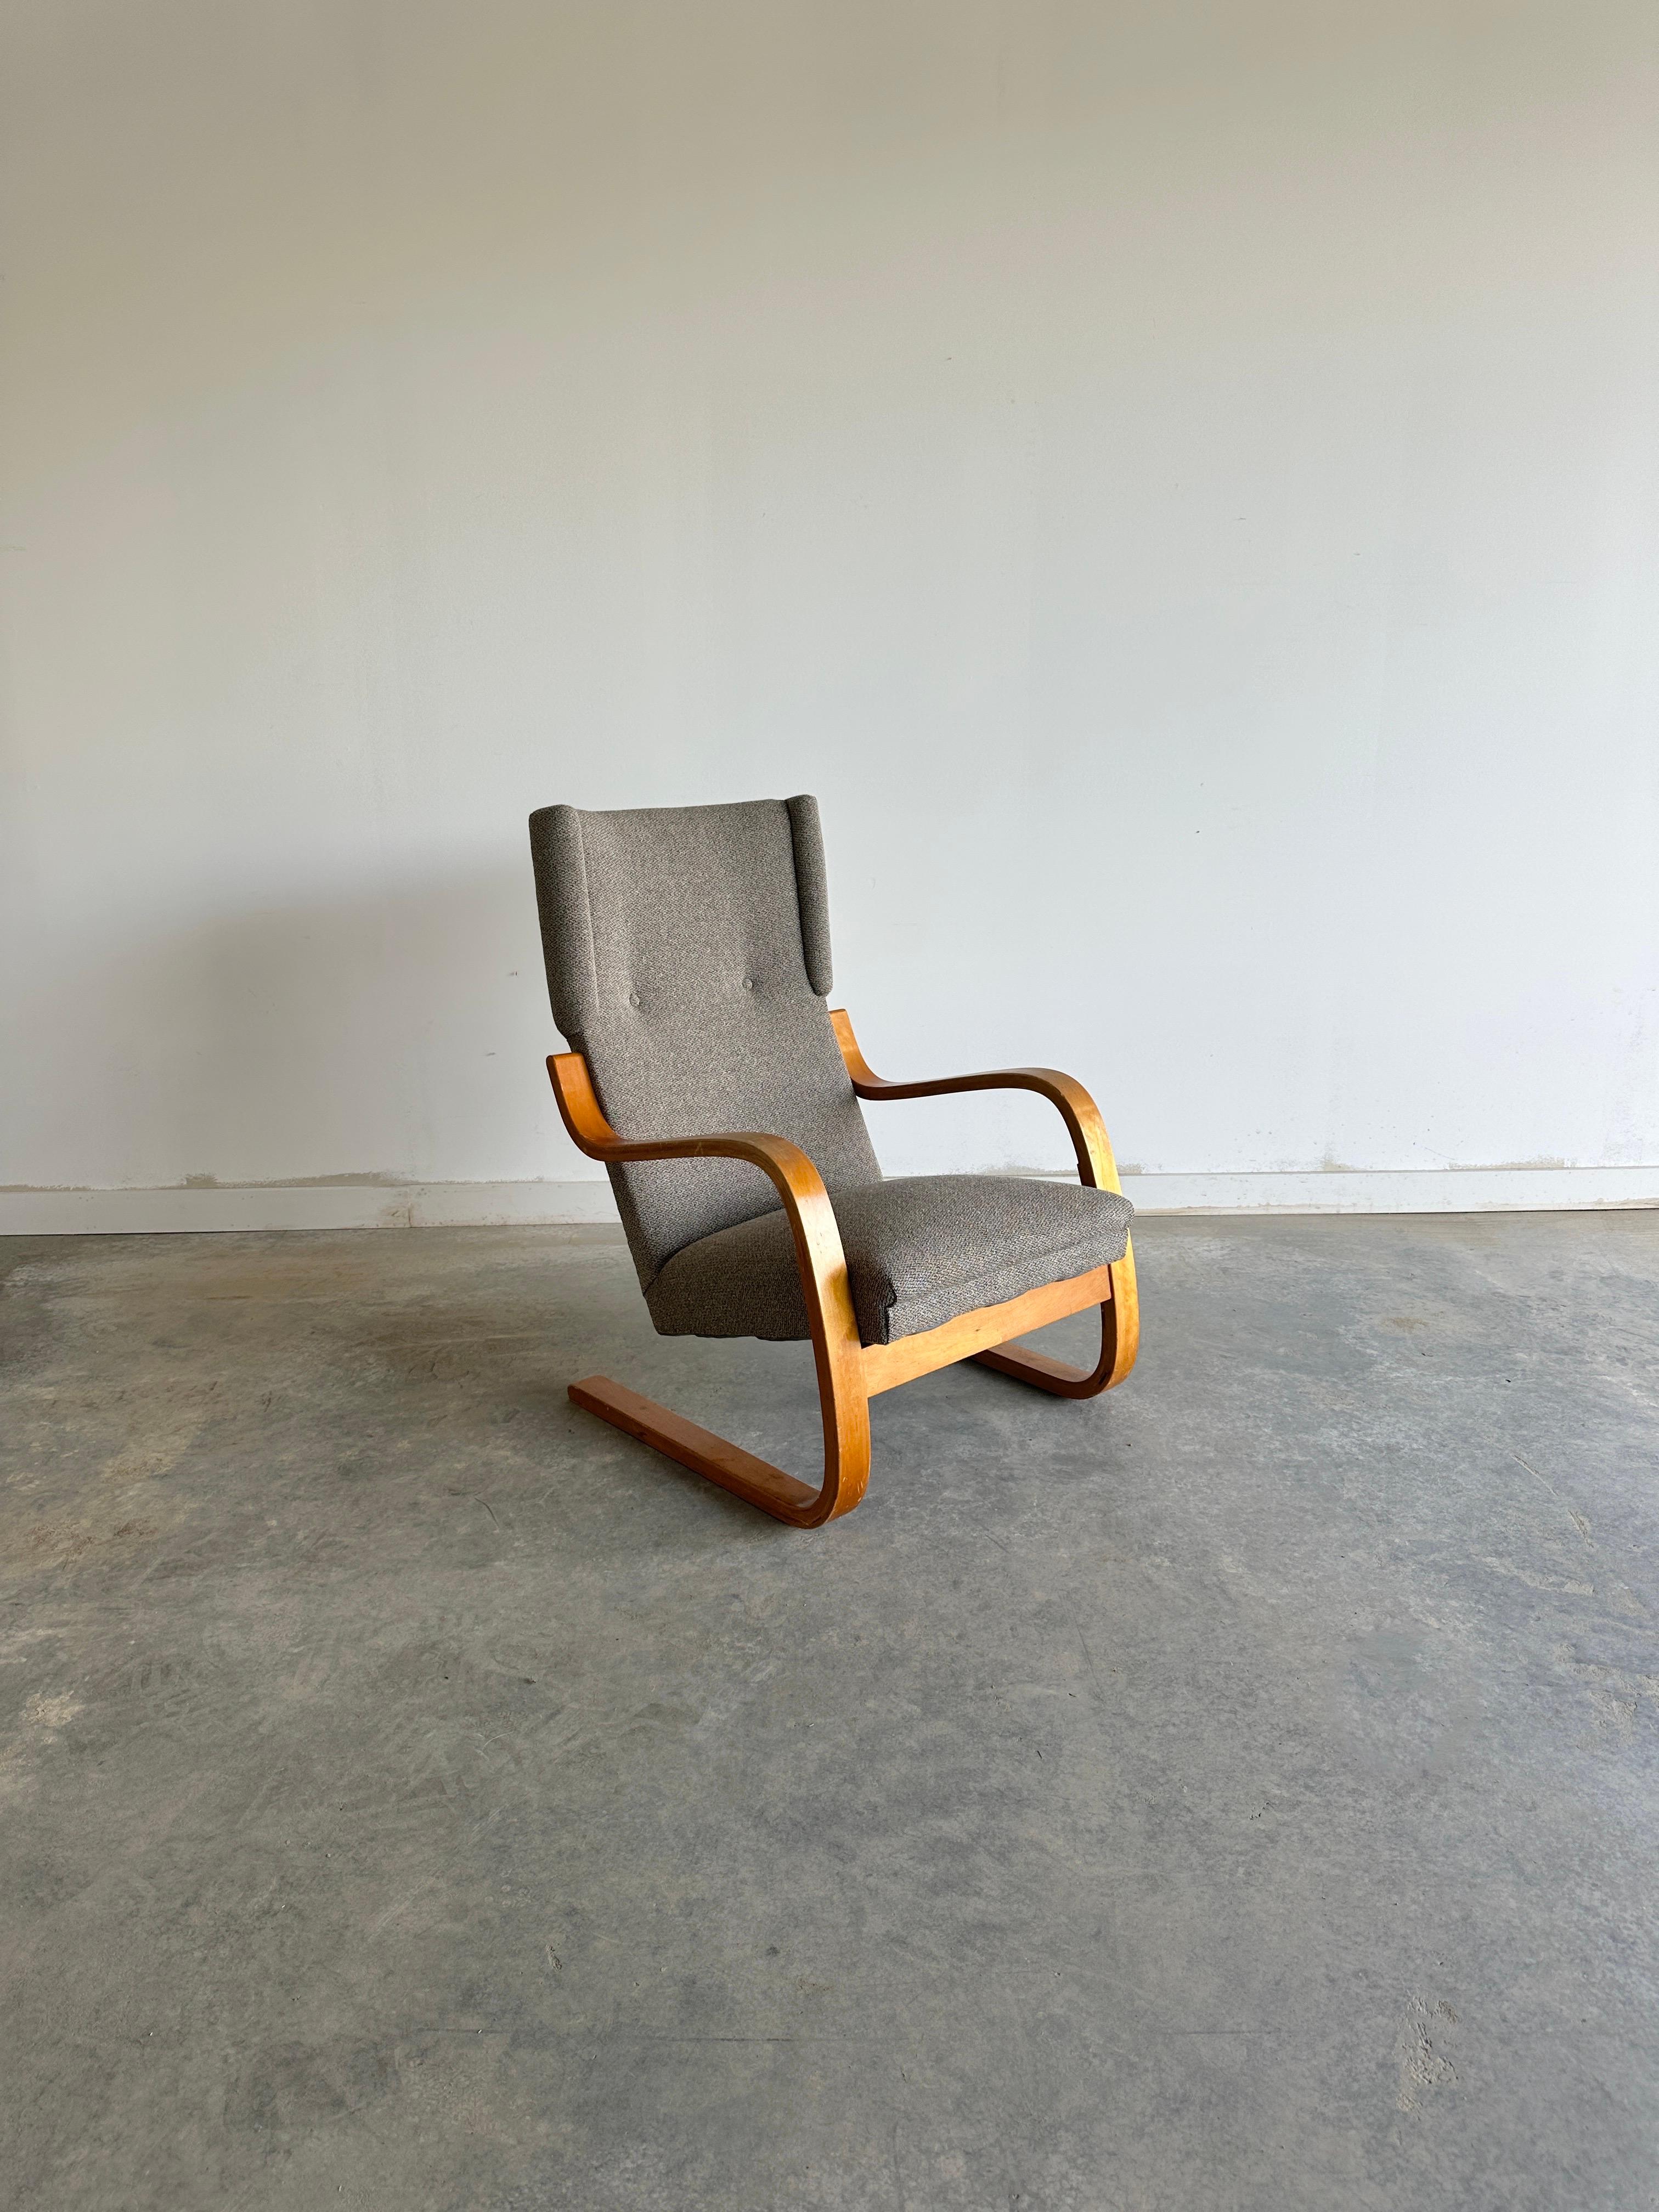 Le 36/401 Wingback Lounge Chair d'Alvar Aalto pour Artek est un exemple classique du modernisme scandinave. Conçue en 1933, cette chaise présente un cadre en porte-à-faux en bois de bouleau stratifié qui s'incurve gracieusement pour soutenir